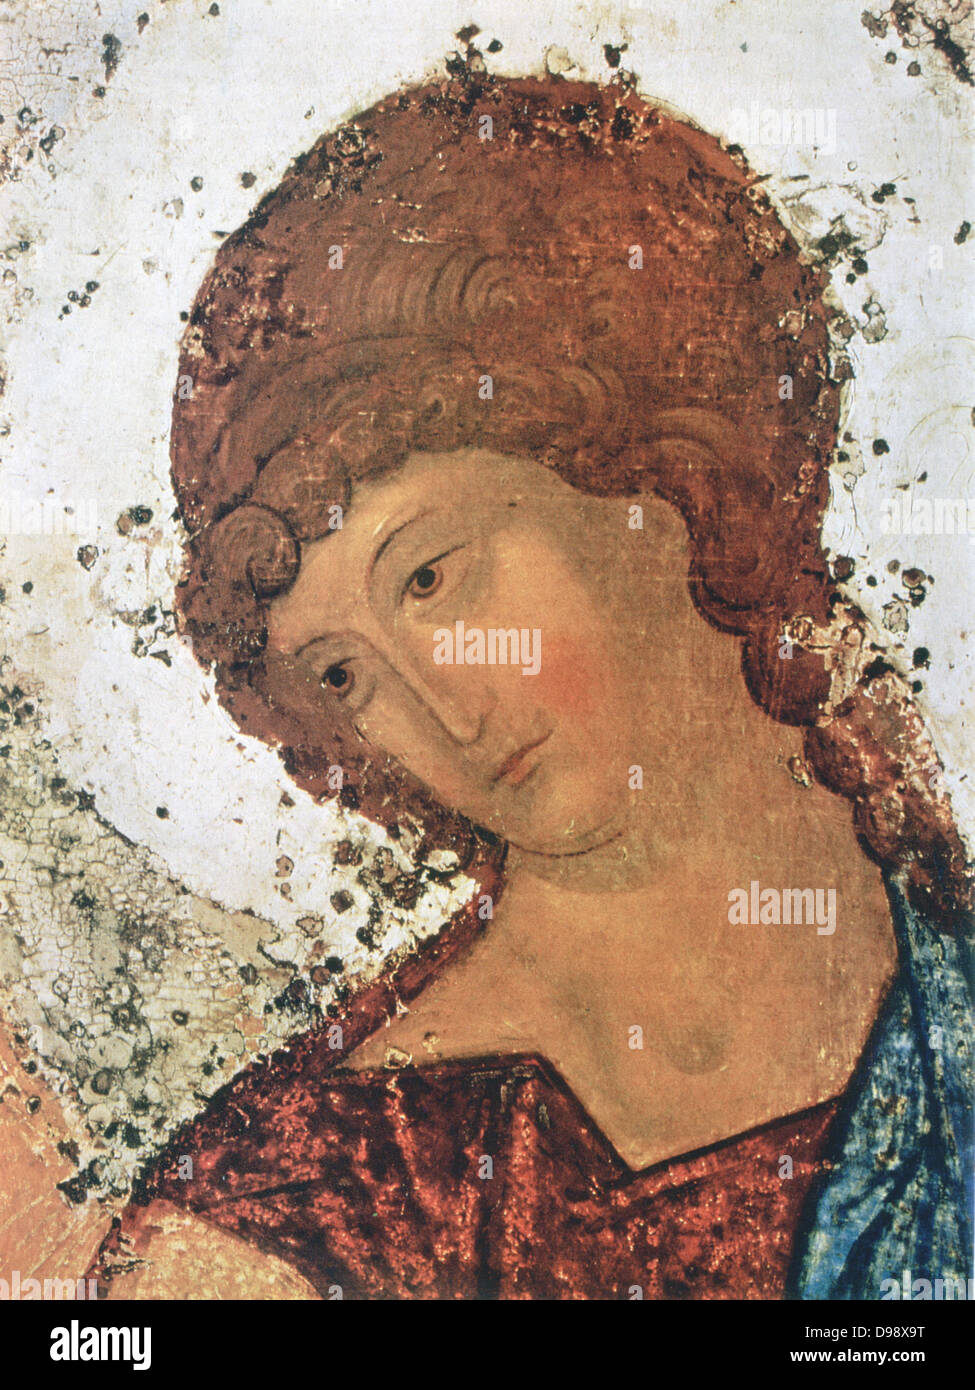 Icona della Trinità, c1411. Andrei Roublev (C1370-c1430) Russo Ortodossi monaco e pittore di icone. Dettaglio che mostra la testa di angelo nel centro dell'immagine. Foto Stock